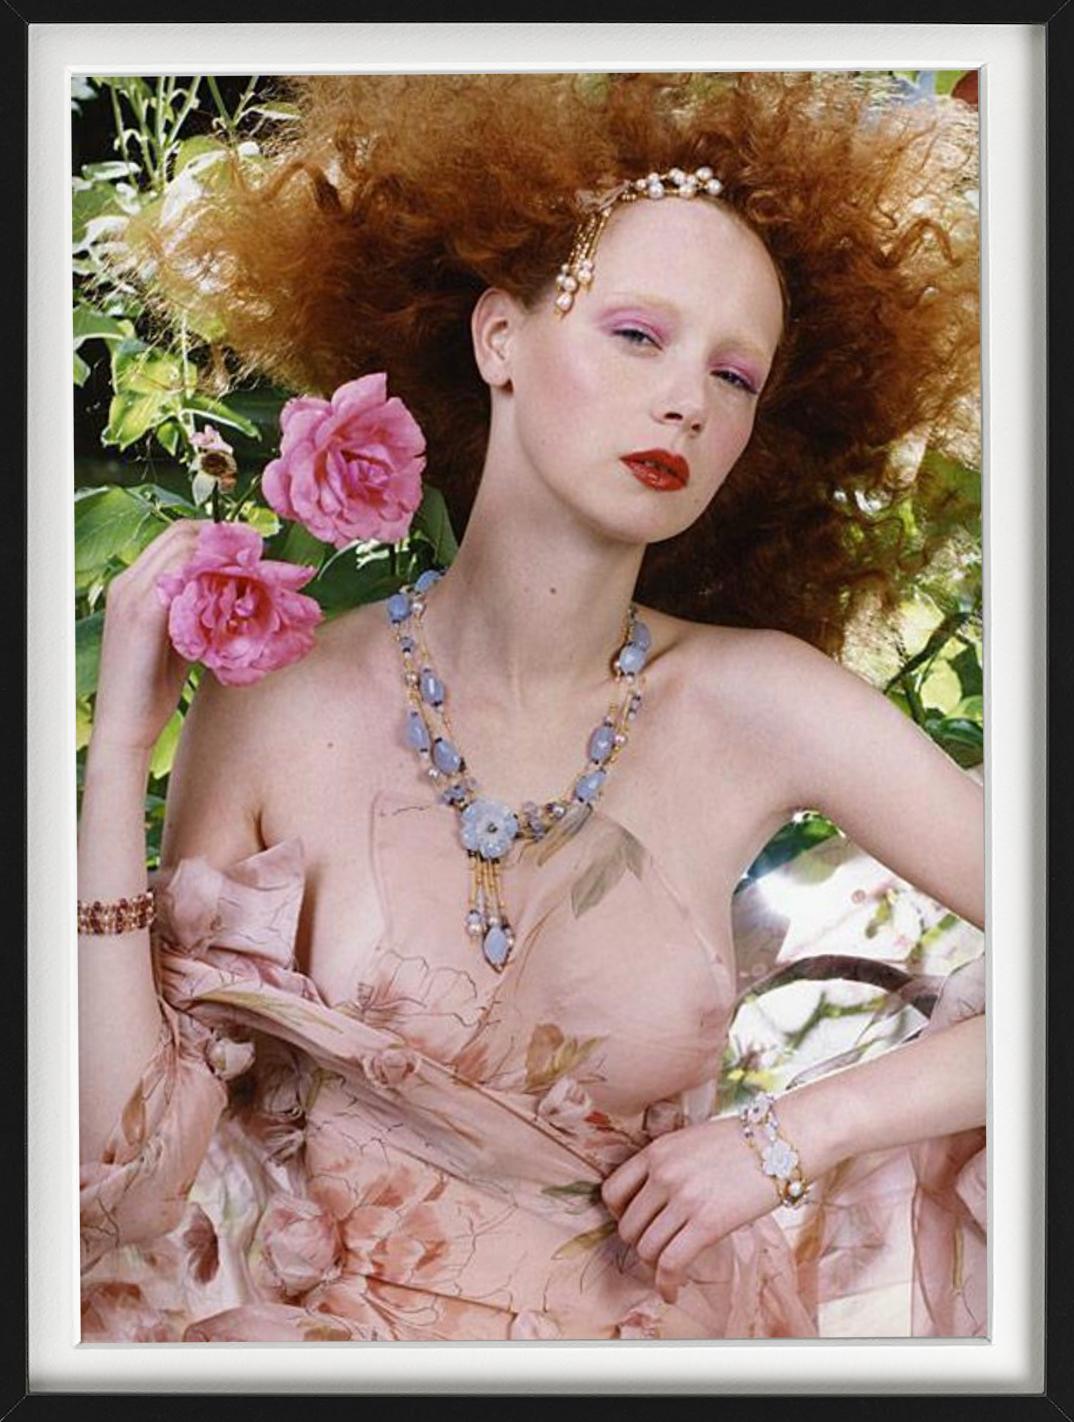 Rotes Haar #2 – halb-nacktes Porträt mit Blumen, Kunstfotografie, 2004 – Photograph von Iris Brosch